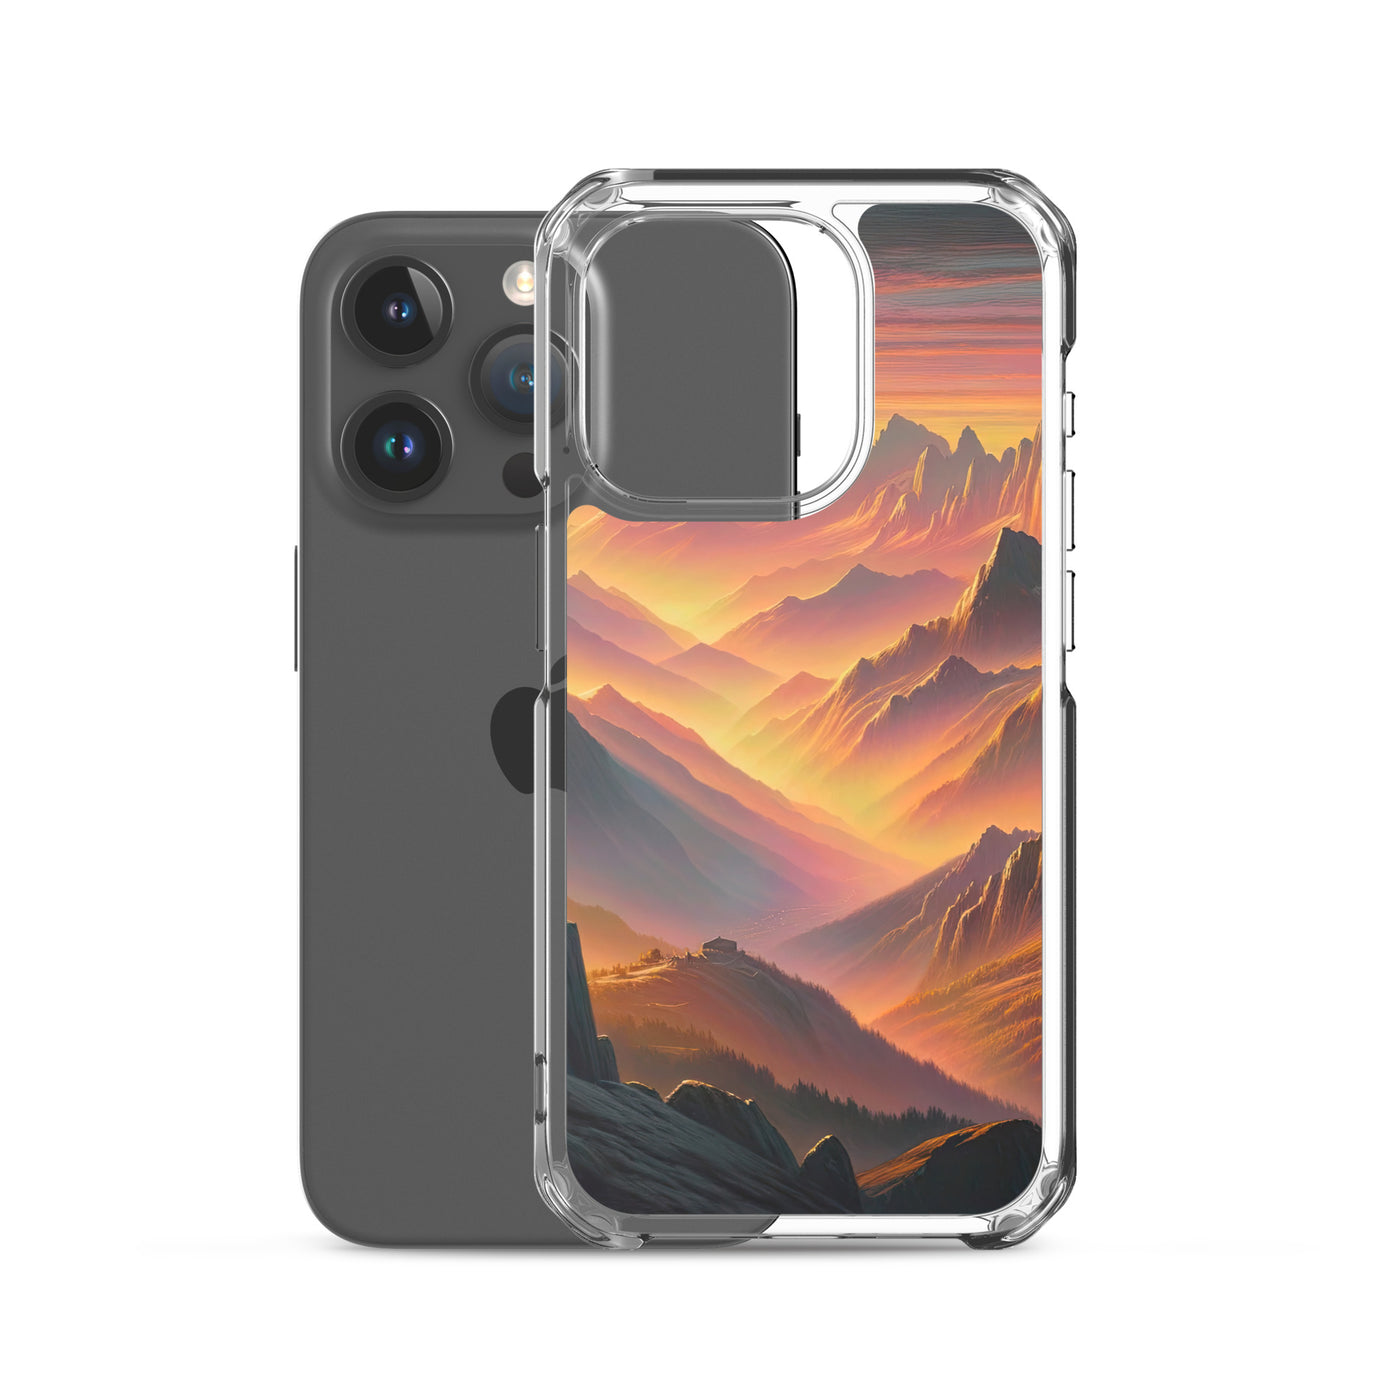 Ölgemälde der Alpen in der goldenen Stunde mit Wanderer, Orange-Rosa Bergpanorama - iPhone Schutzhülle (durchsichtig) wandern xxx yyy zzz